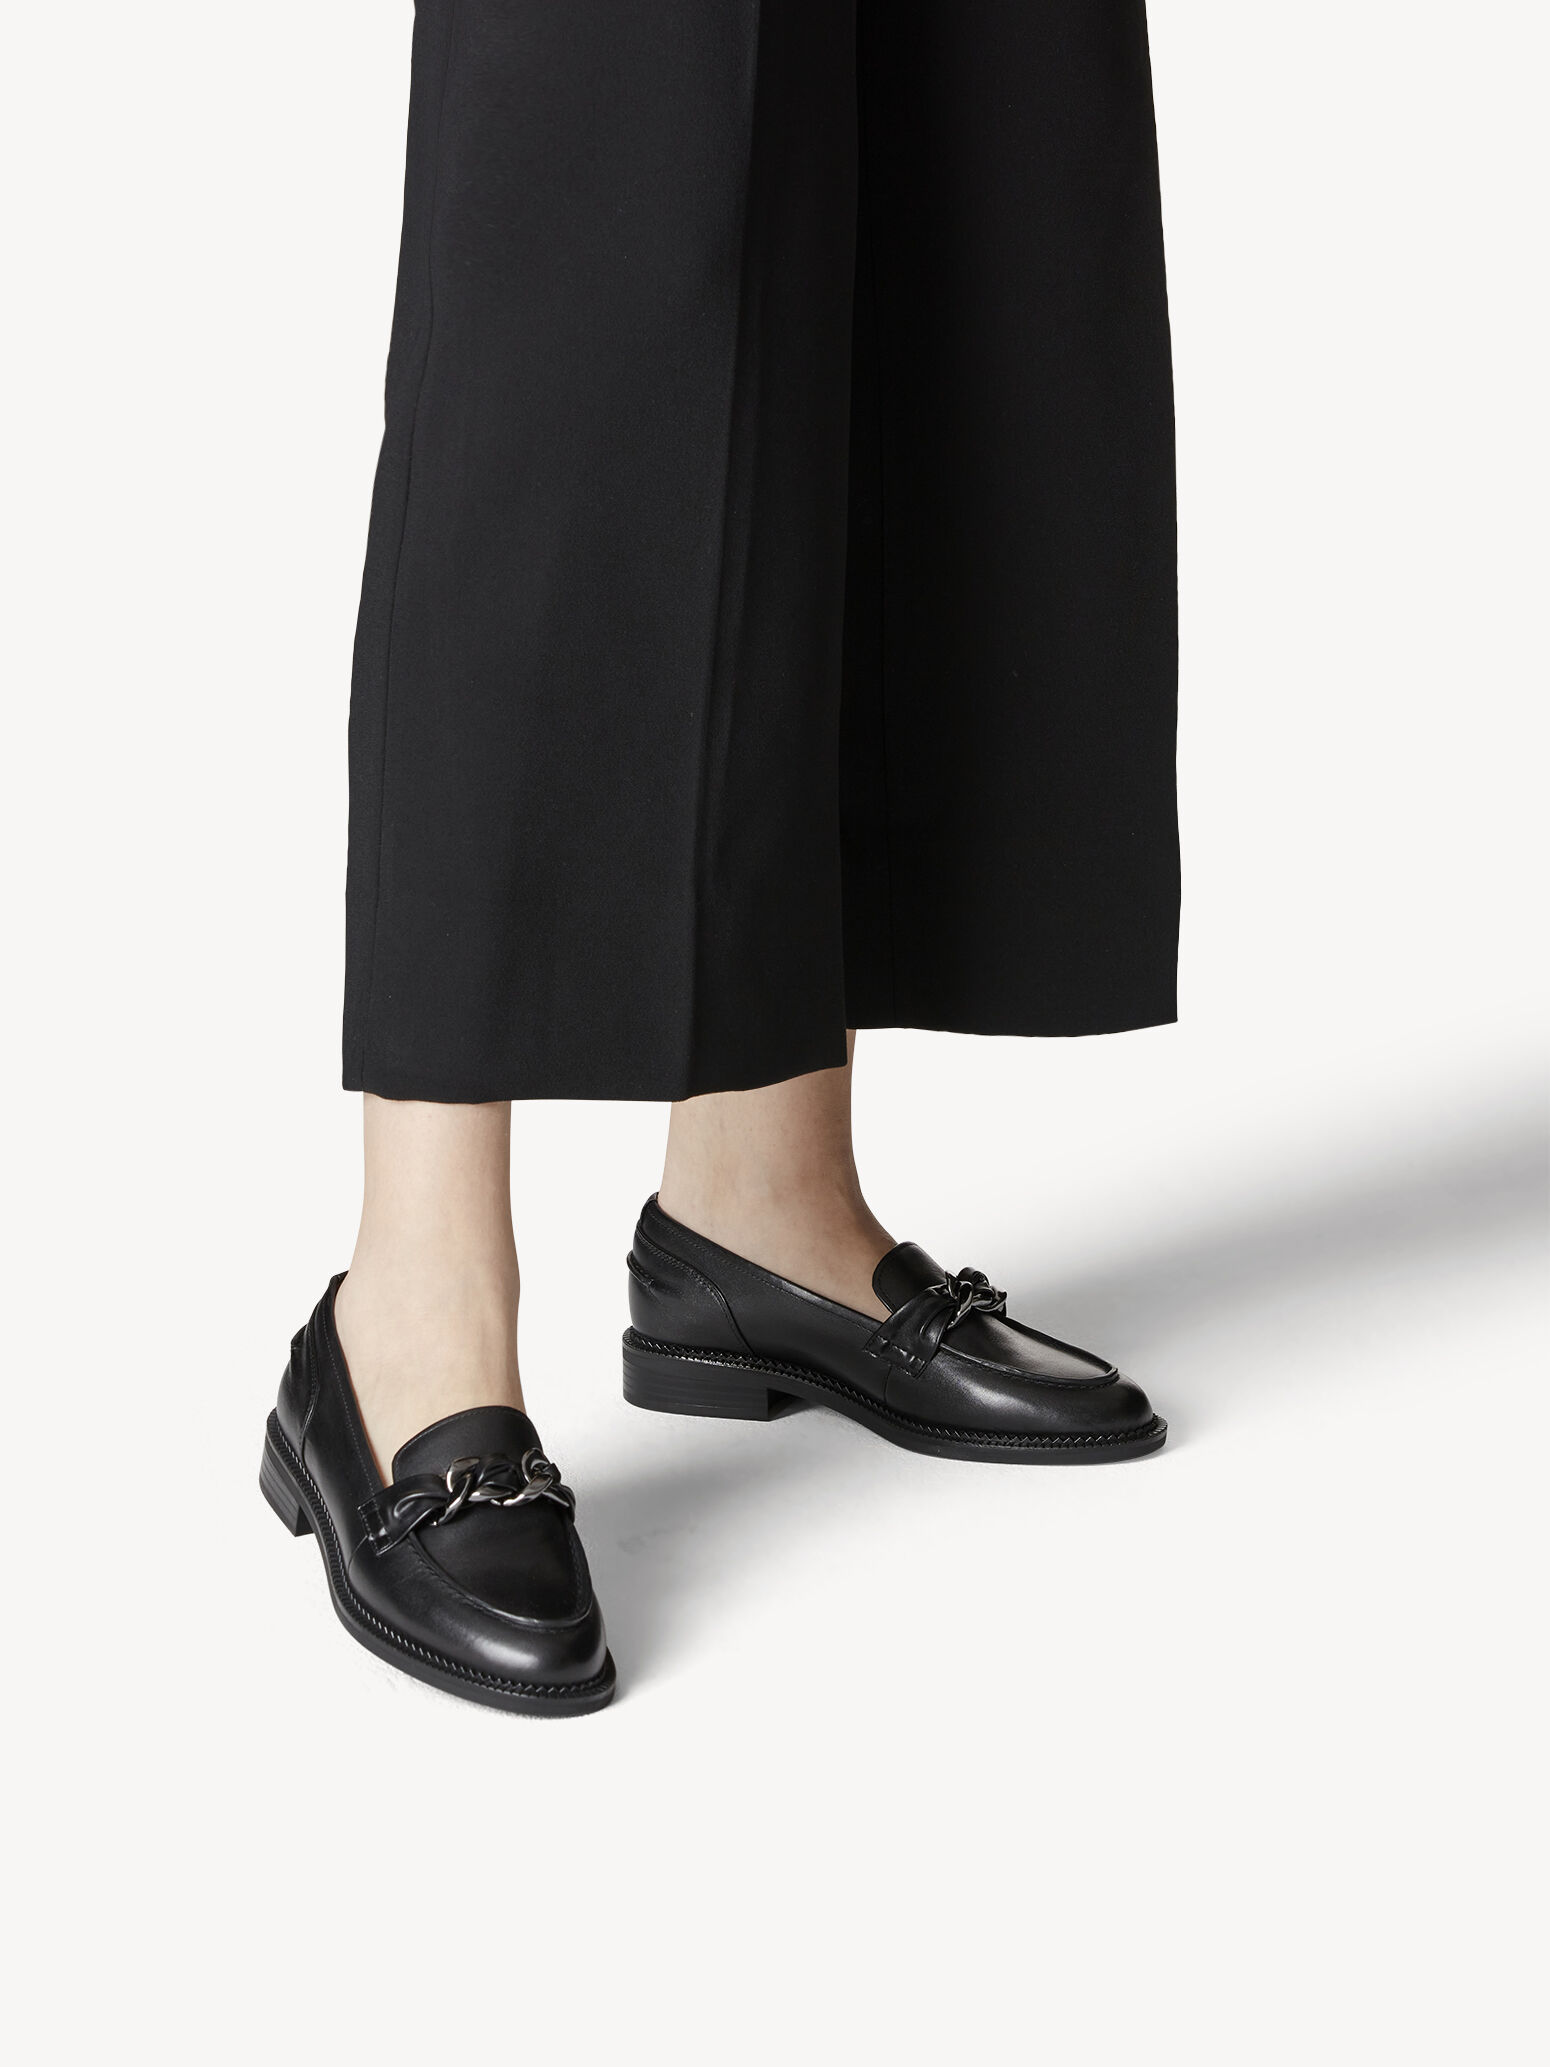 Schoenen Lage schoenen Instappers Comfortabel Instappers zwart elegant 